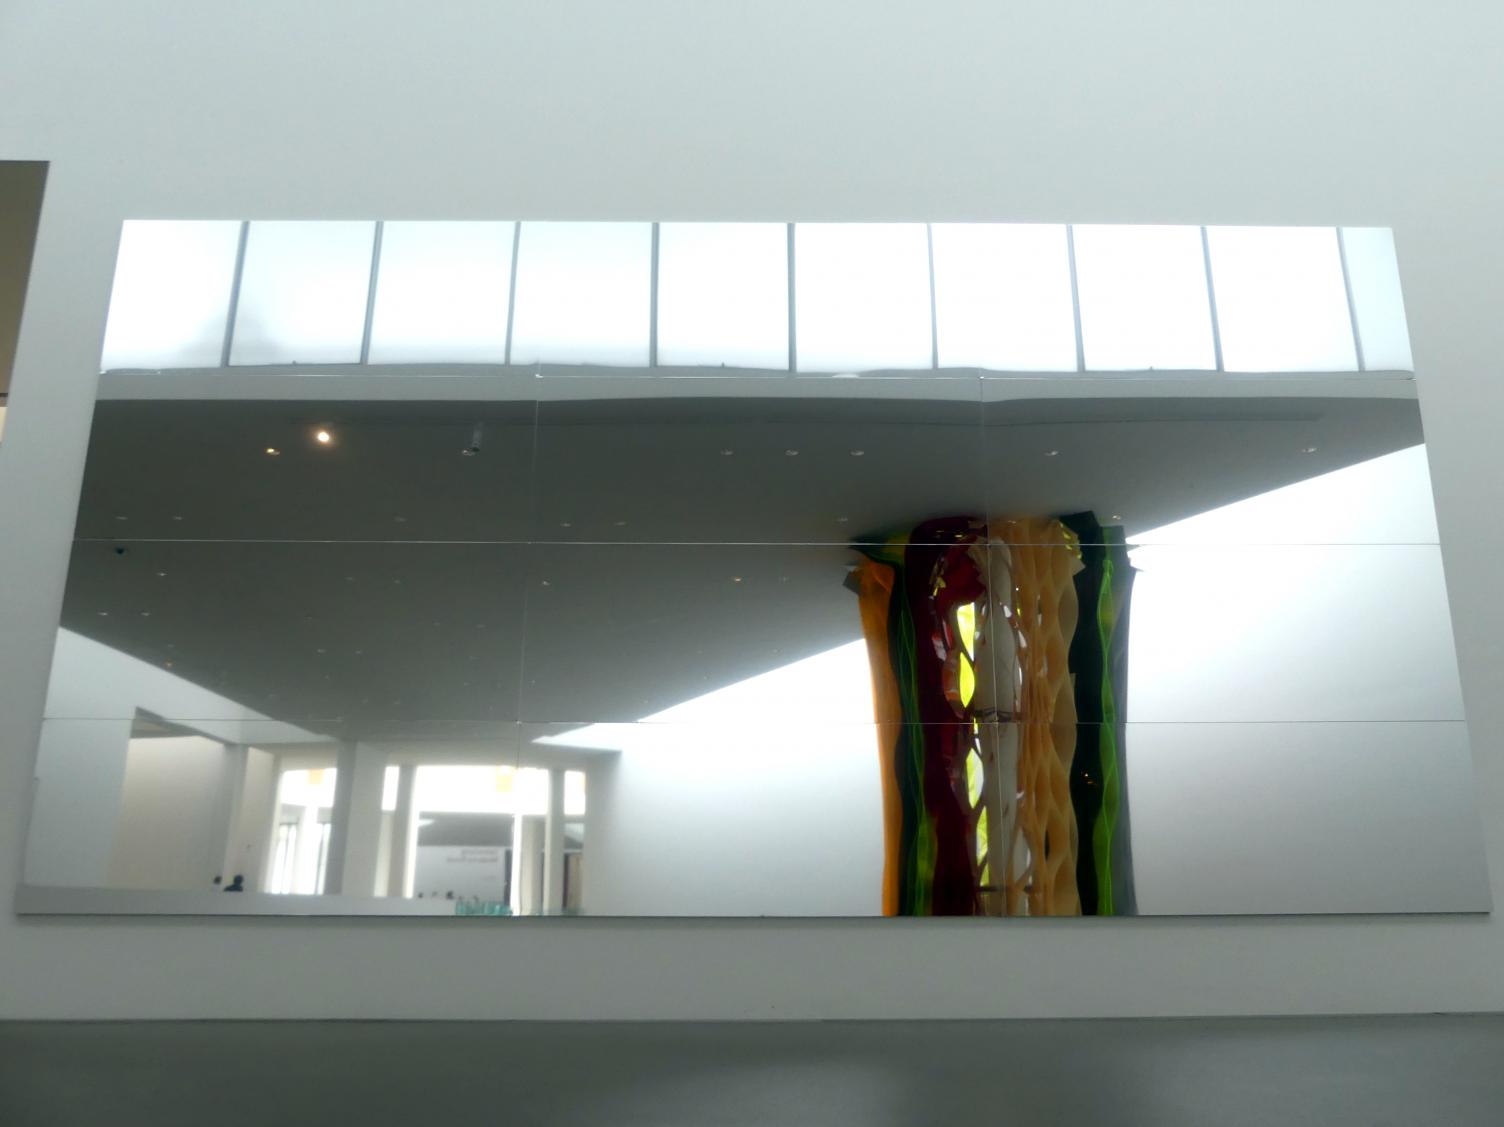 Heimo Zobernig (1994–2019), Ohne Titel, München, Pinakothek der Moderne, Treppe im Ostflügel, 1999